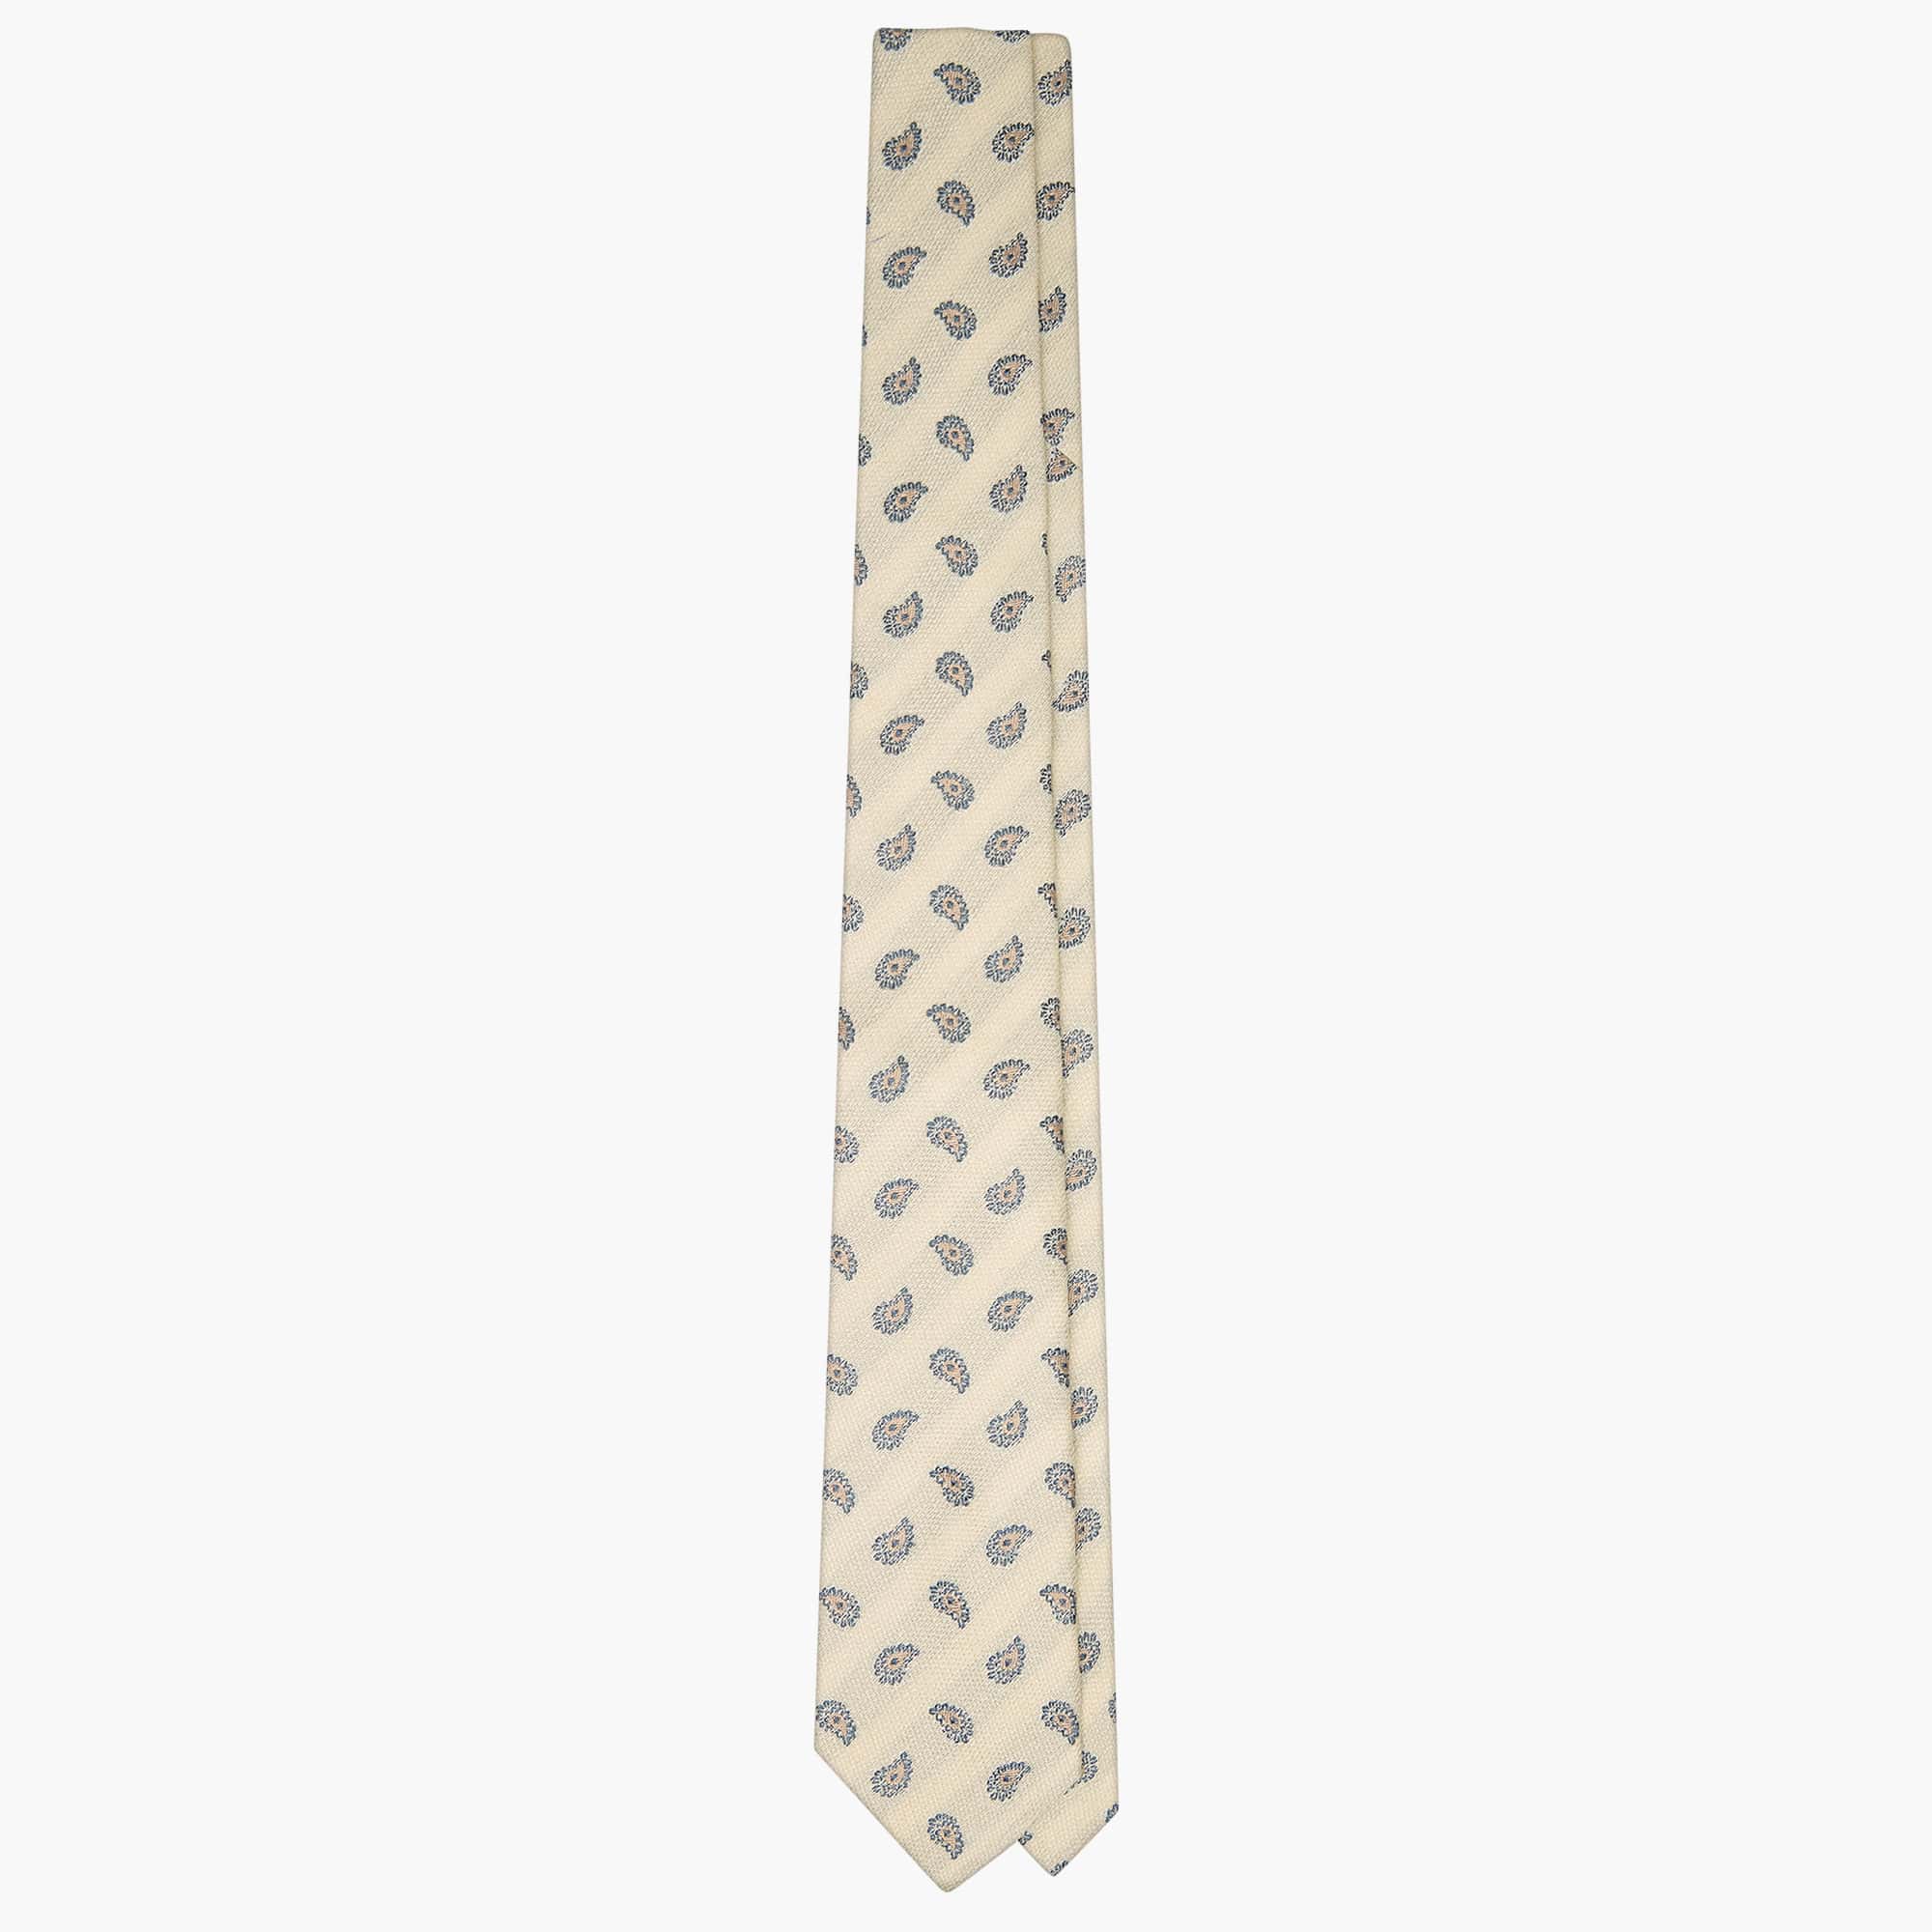 3-Fold Paisley Jacquard Silk Tie - Ivory